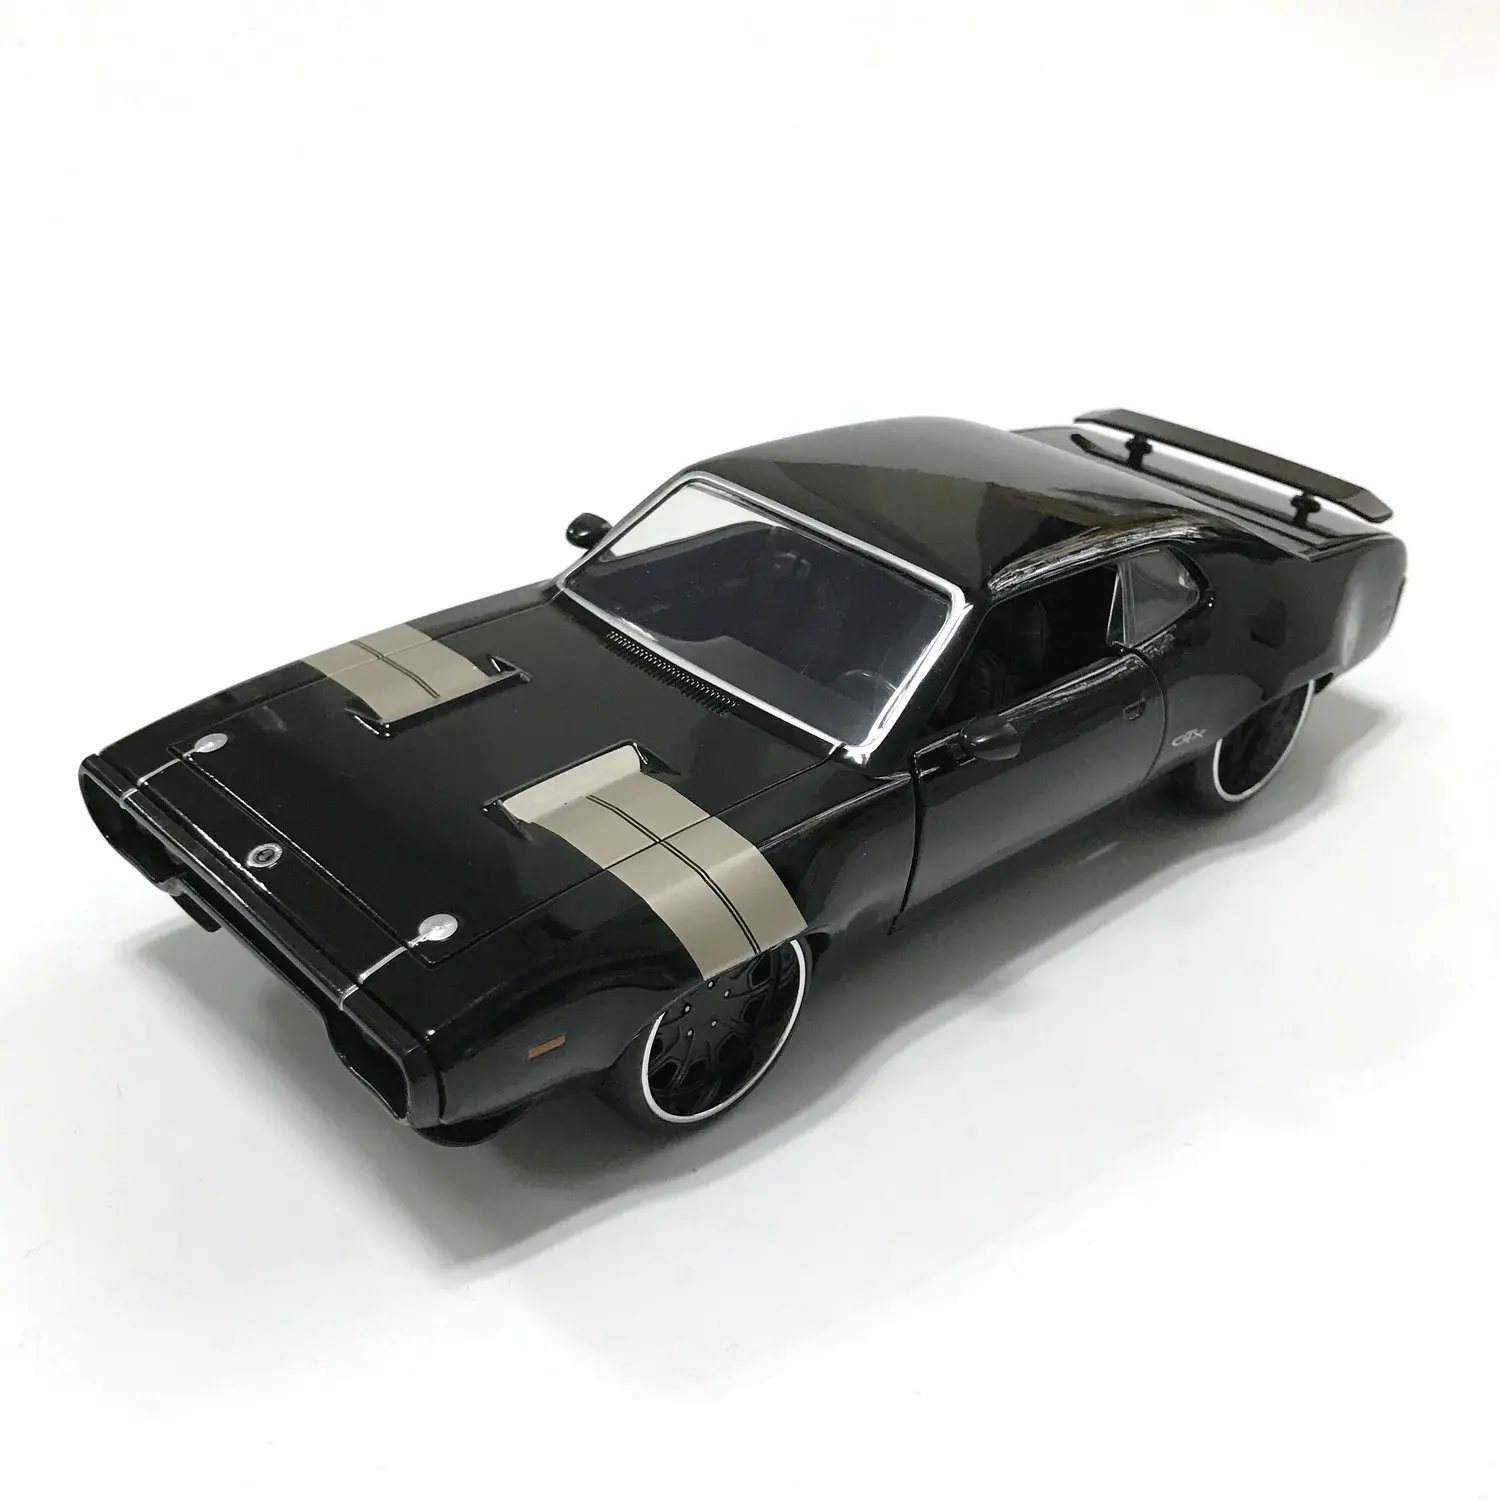 

Модель машины Форсаж 1/24 года, модель машины Dom's Plymouth GTX, коллекционное издание, металлические модели автомобилей под давлением, детские игру...